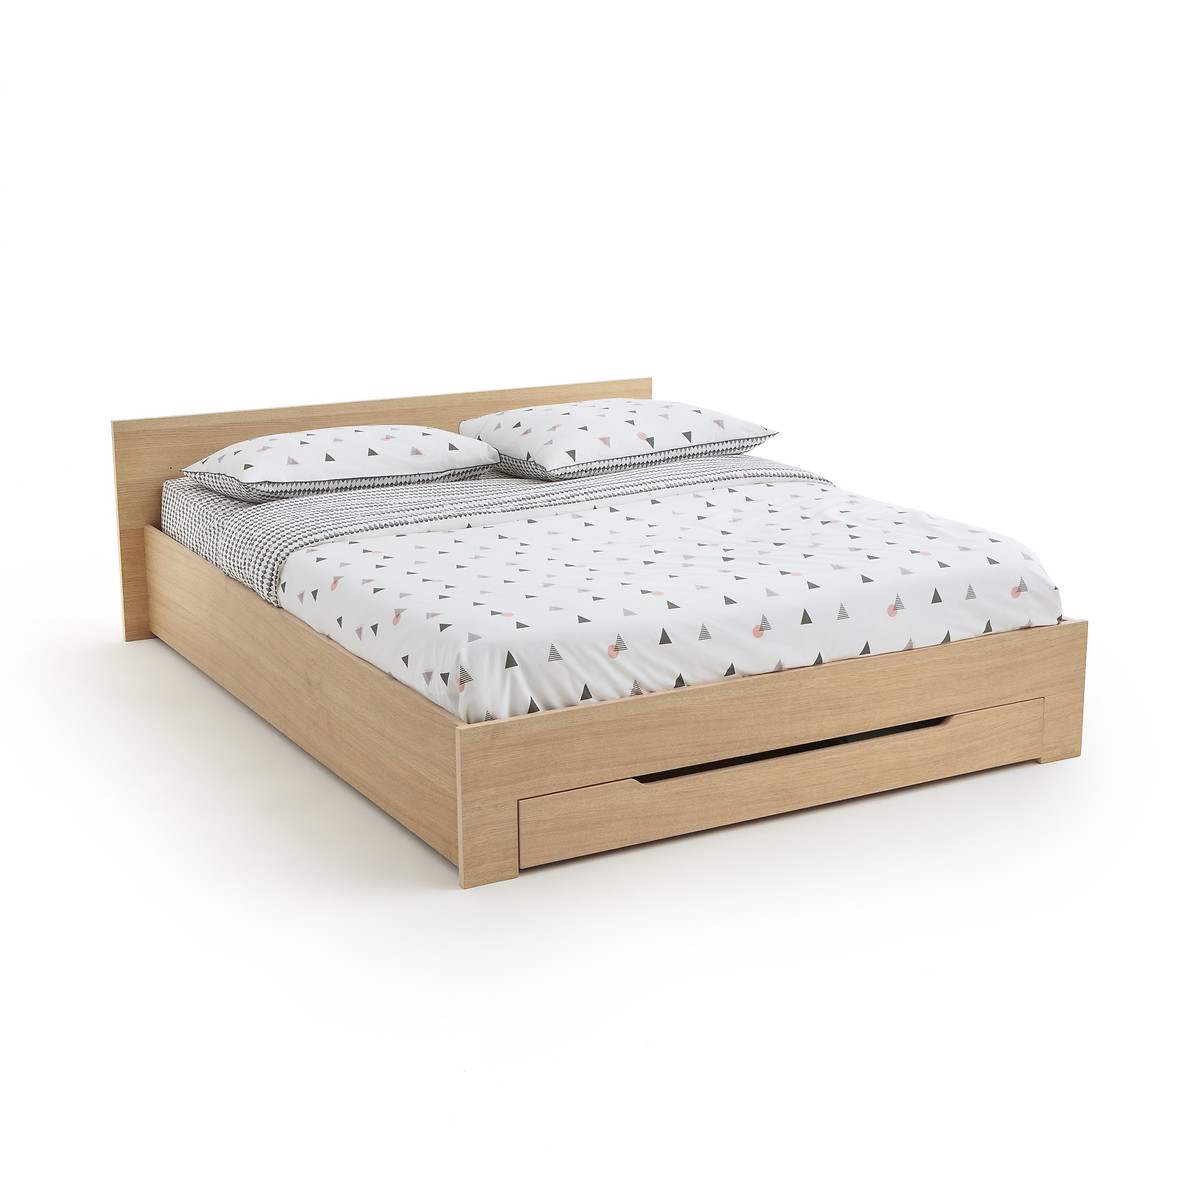 Кровать С каркасом для матраса и выдвижным ящиком CRAWLEY 140 x 190 см каштановый